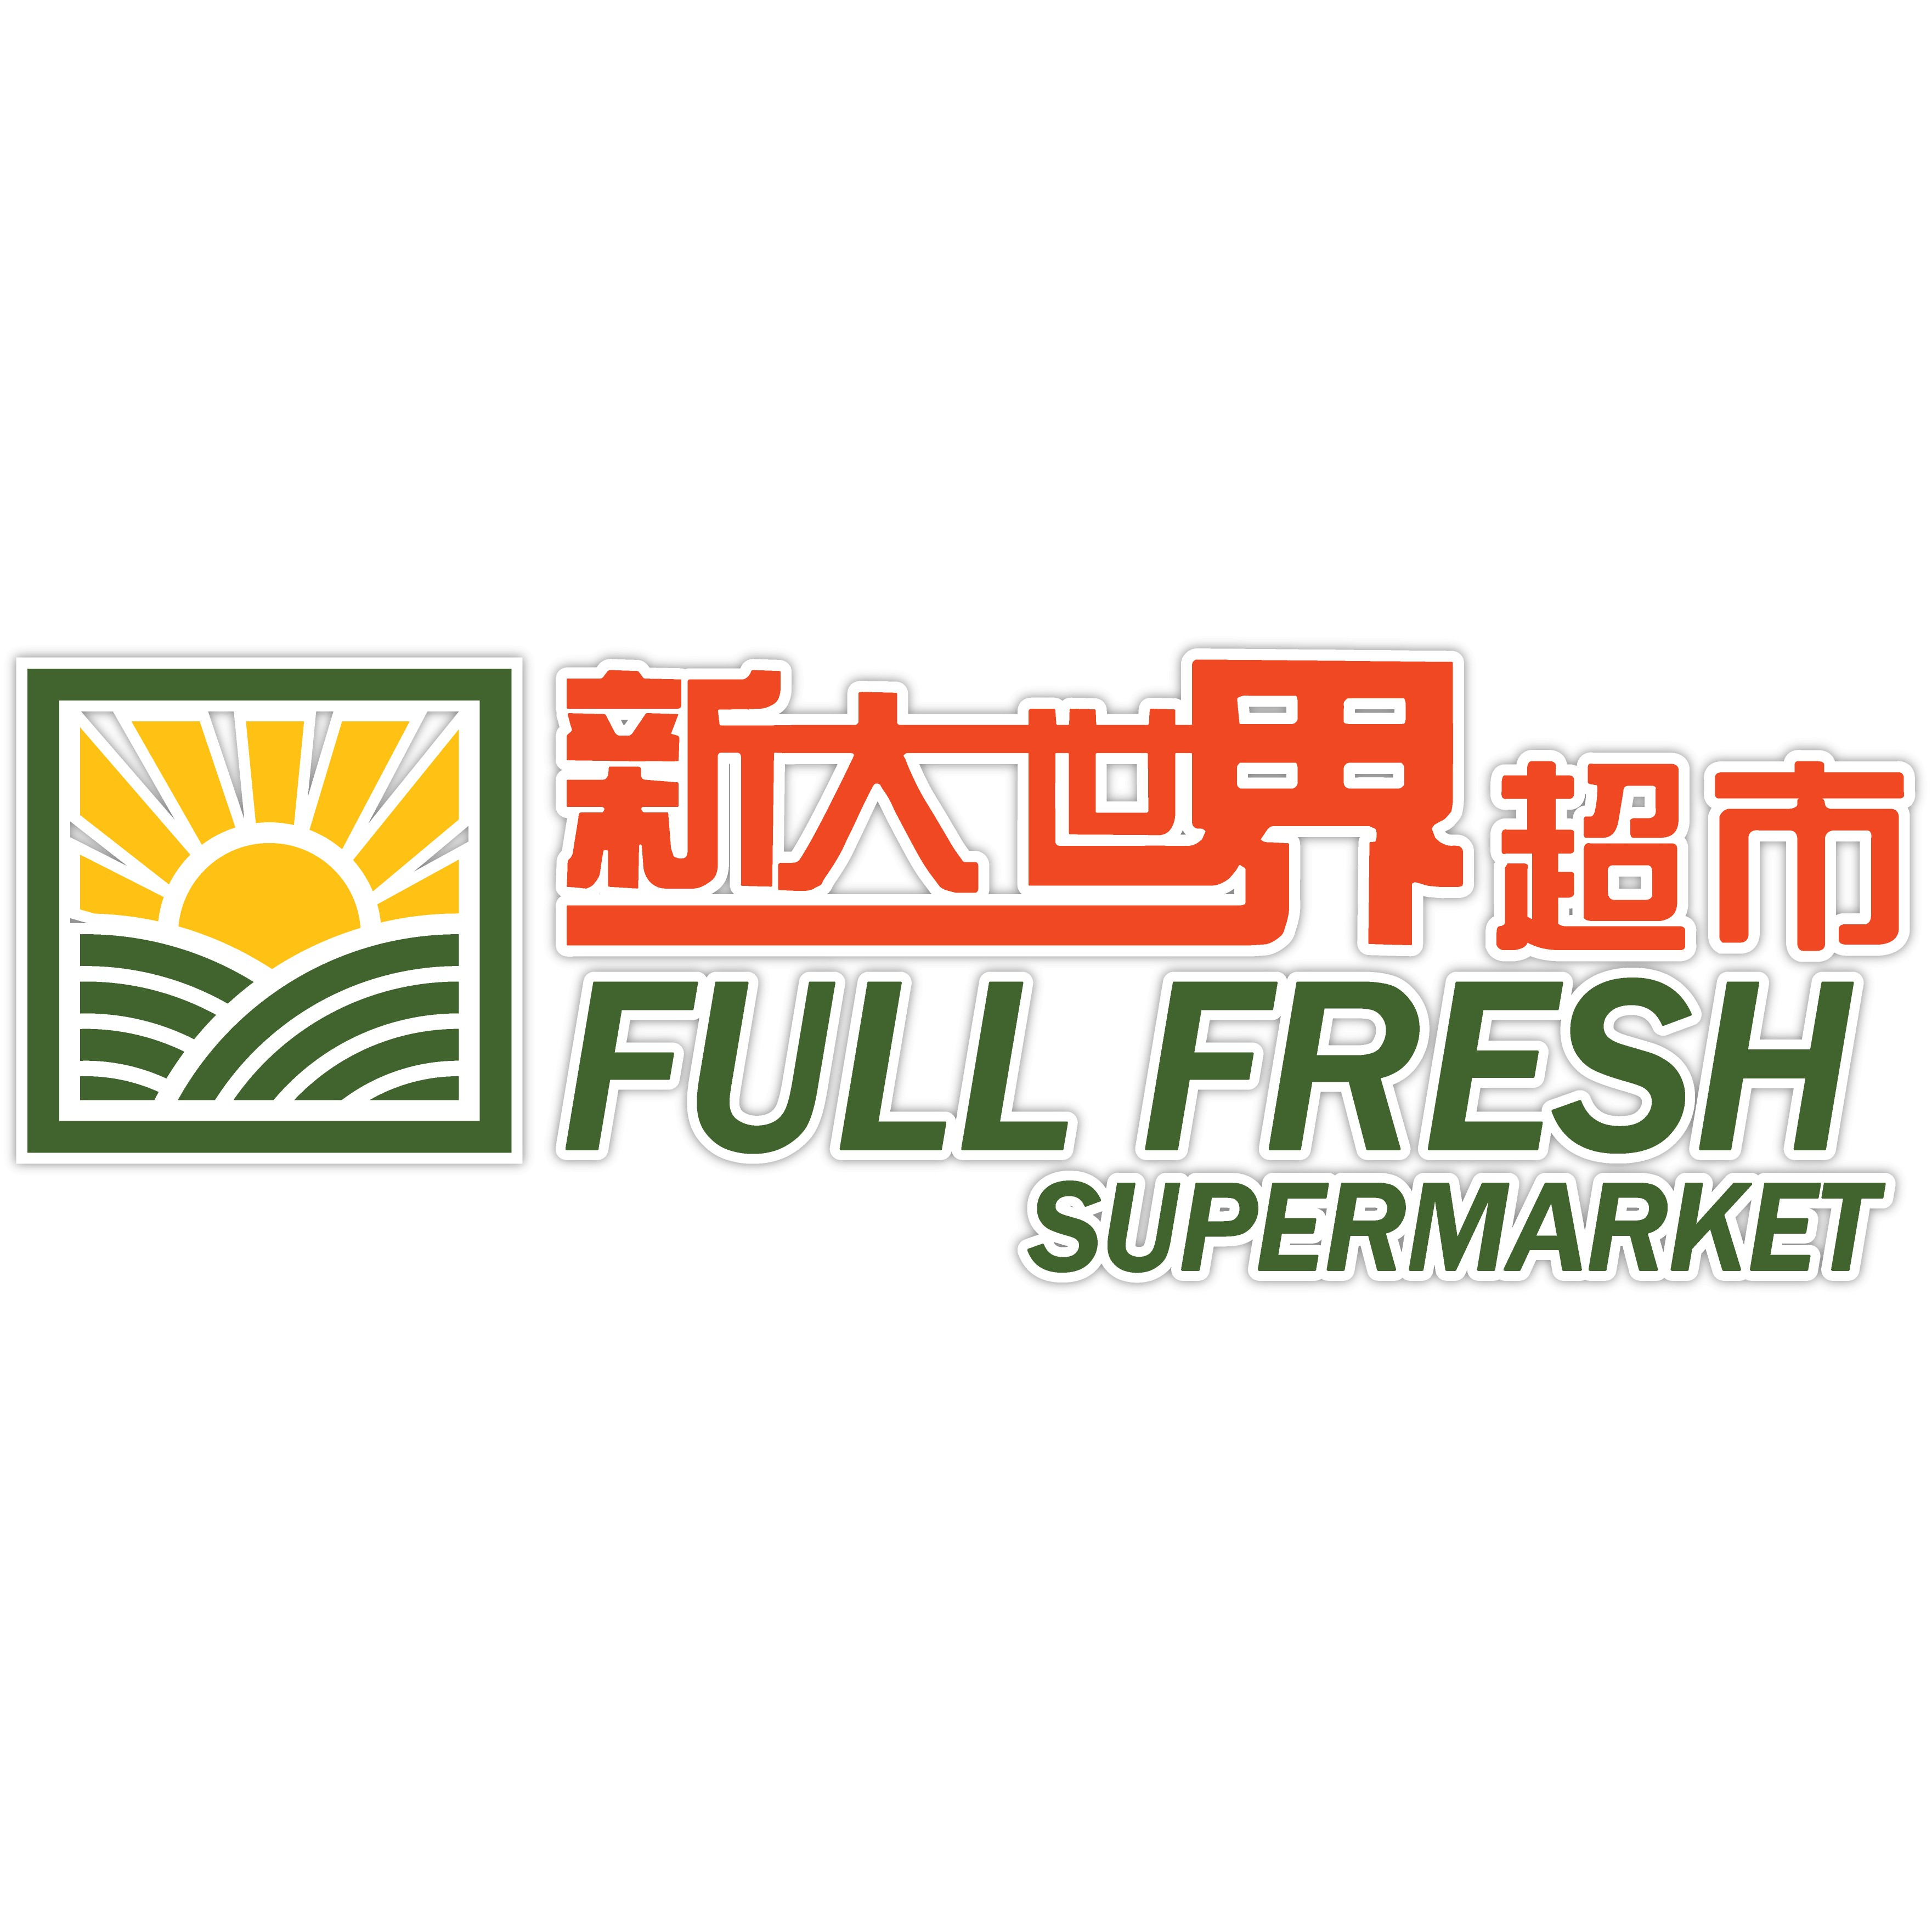 Full Fresh Supermarket Logo